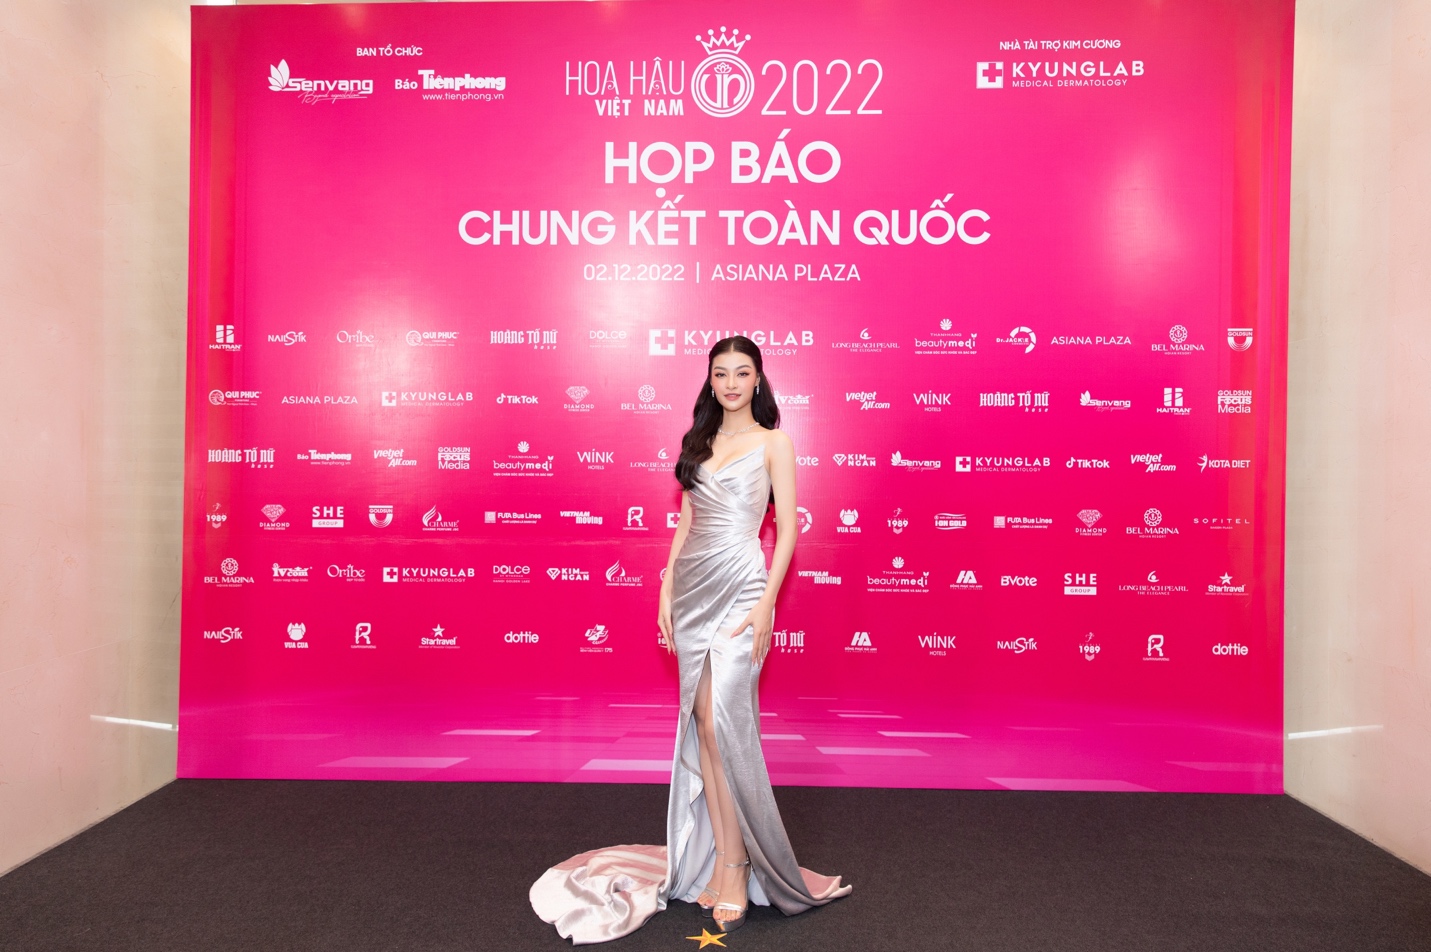 Dàn Hoa hậu, Á hậu đổ bộ tại thảm đỏ họp báo chung kết toàn quốc Hoa hậu Việt Nam 2022 - Ảnh 2.